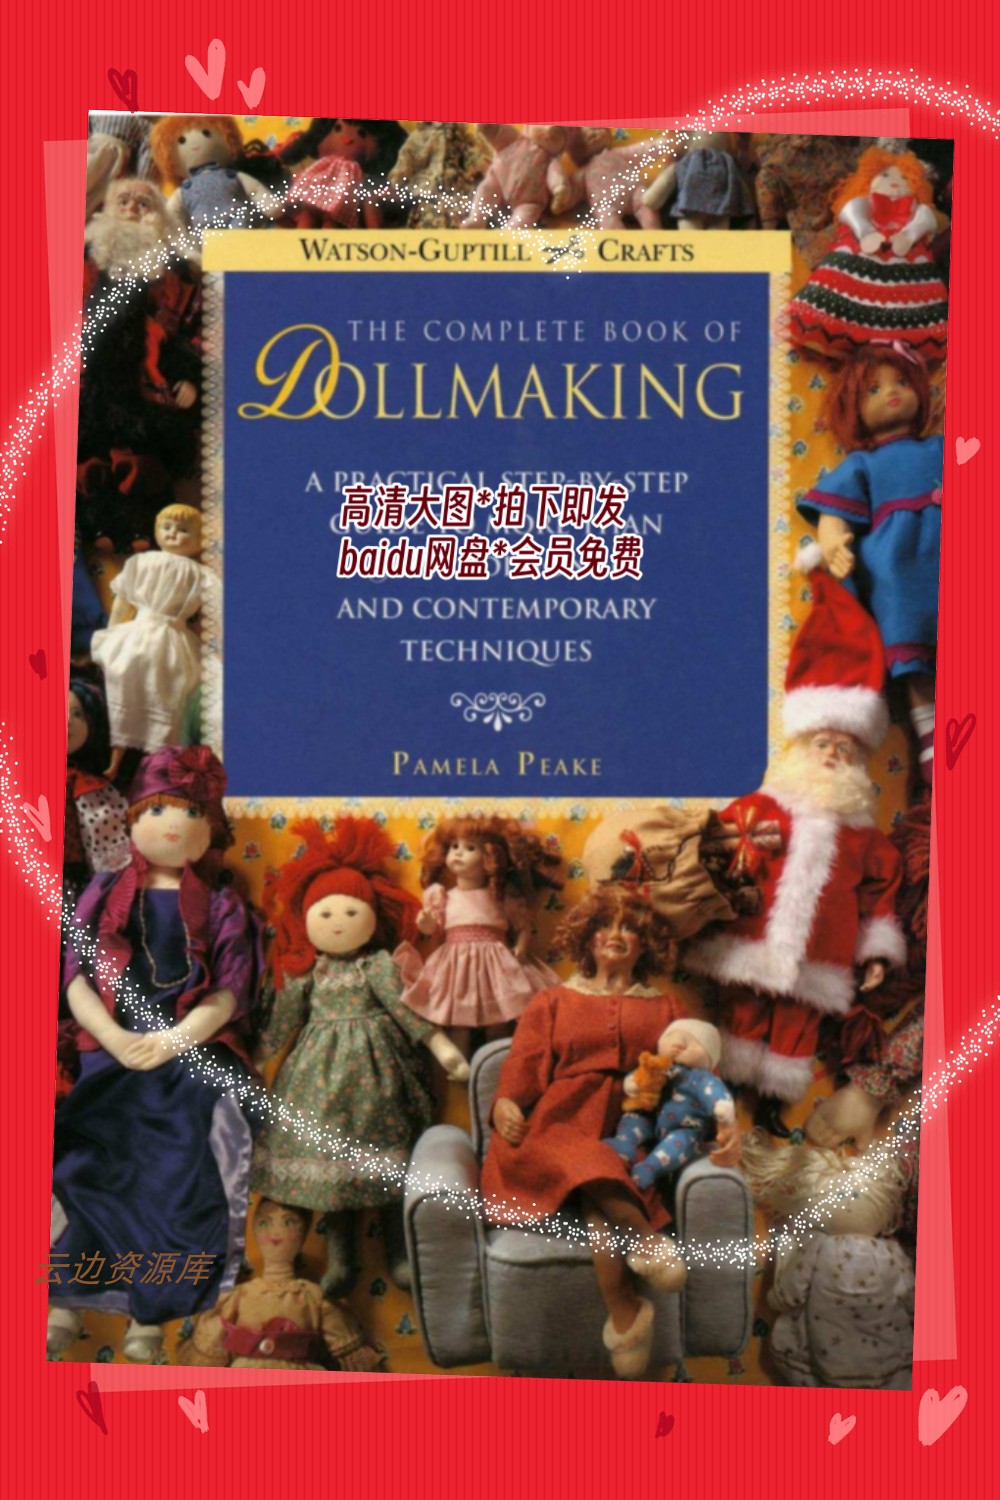 284「英文」娃娃制作全书  世界各种娃娃鉴赏及关键制作步骤图解